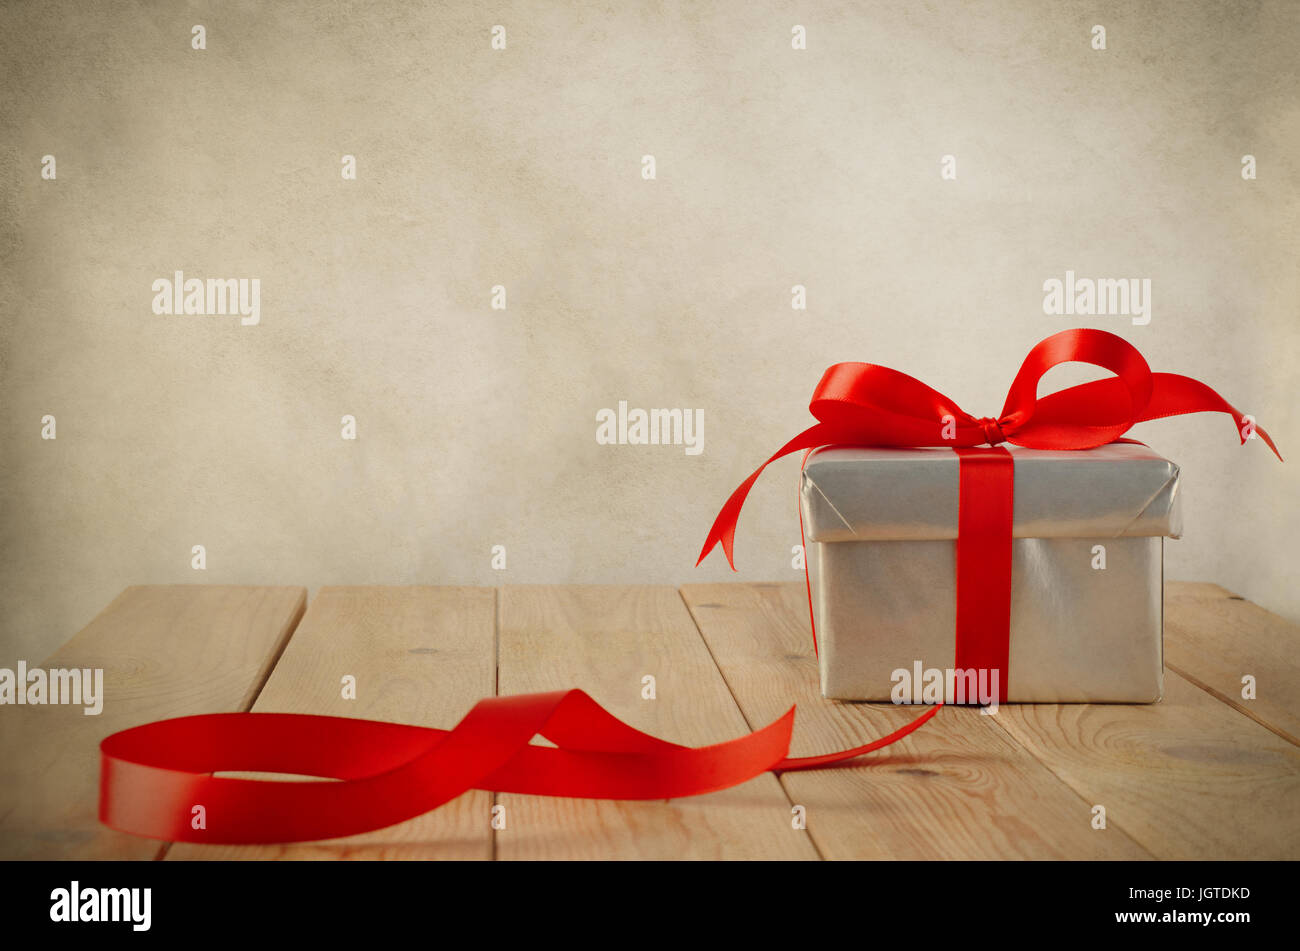 Eine Weihnachts-Geschenk-Box mit geschlossenem Deckel in Silber Papier eingewickelt und an einen Bogen mit einem roten Satinband gebunden.  Platziert auf einem verwitterten alten Holztisch mit Stockfoto